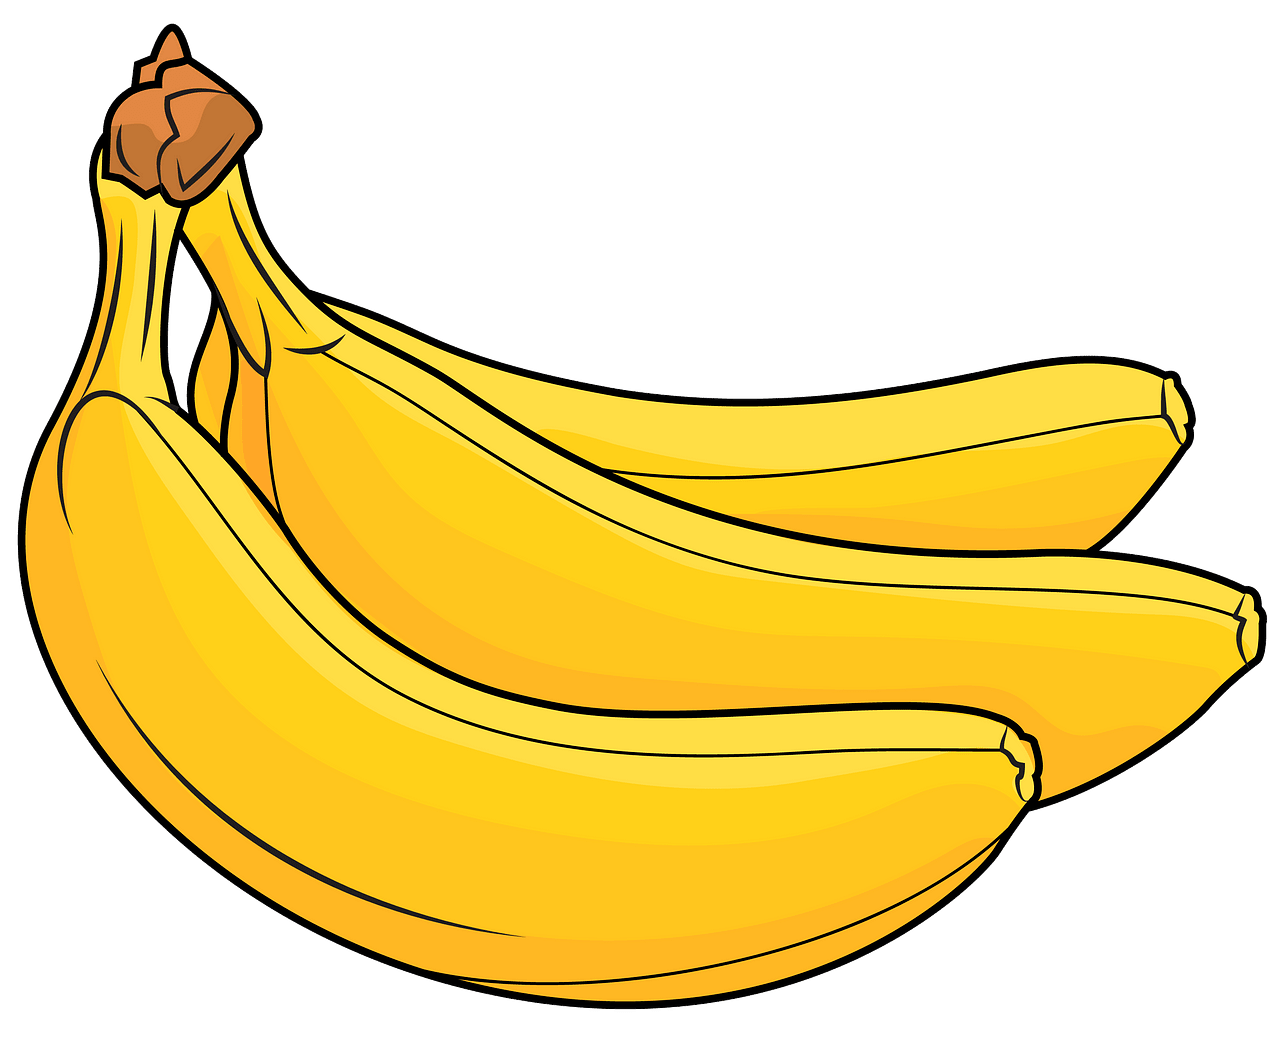 Cartoon Banana PNG Image